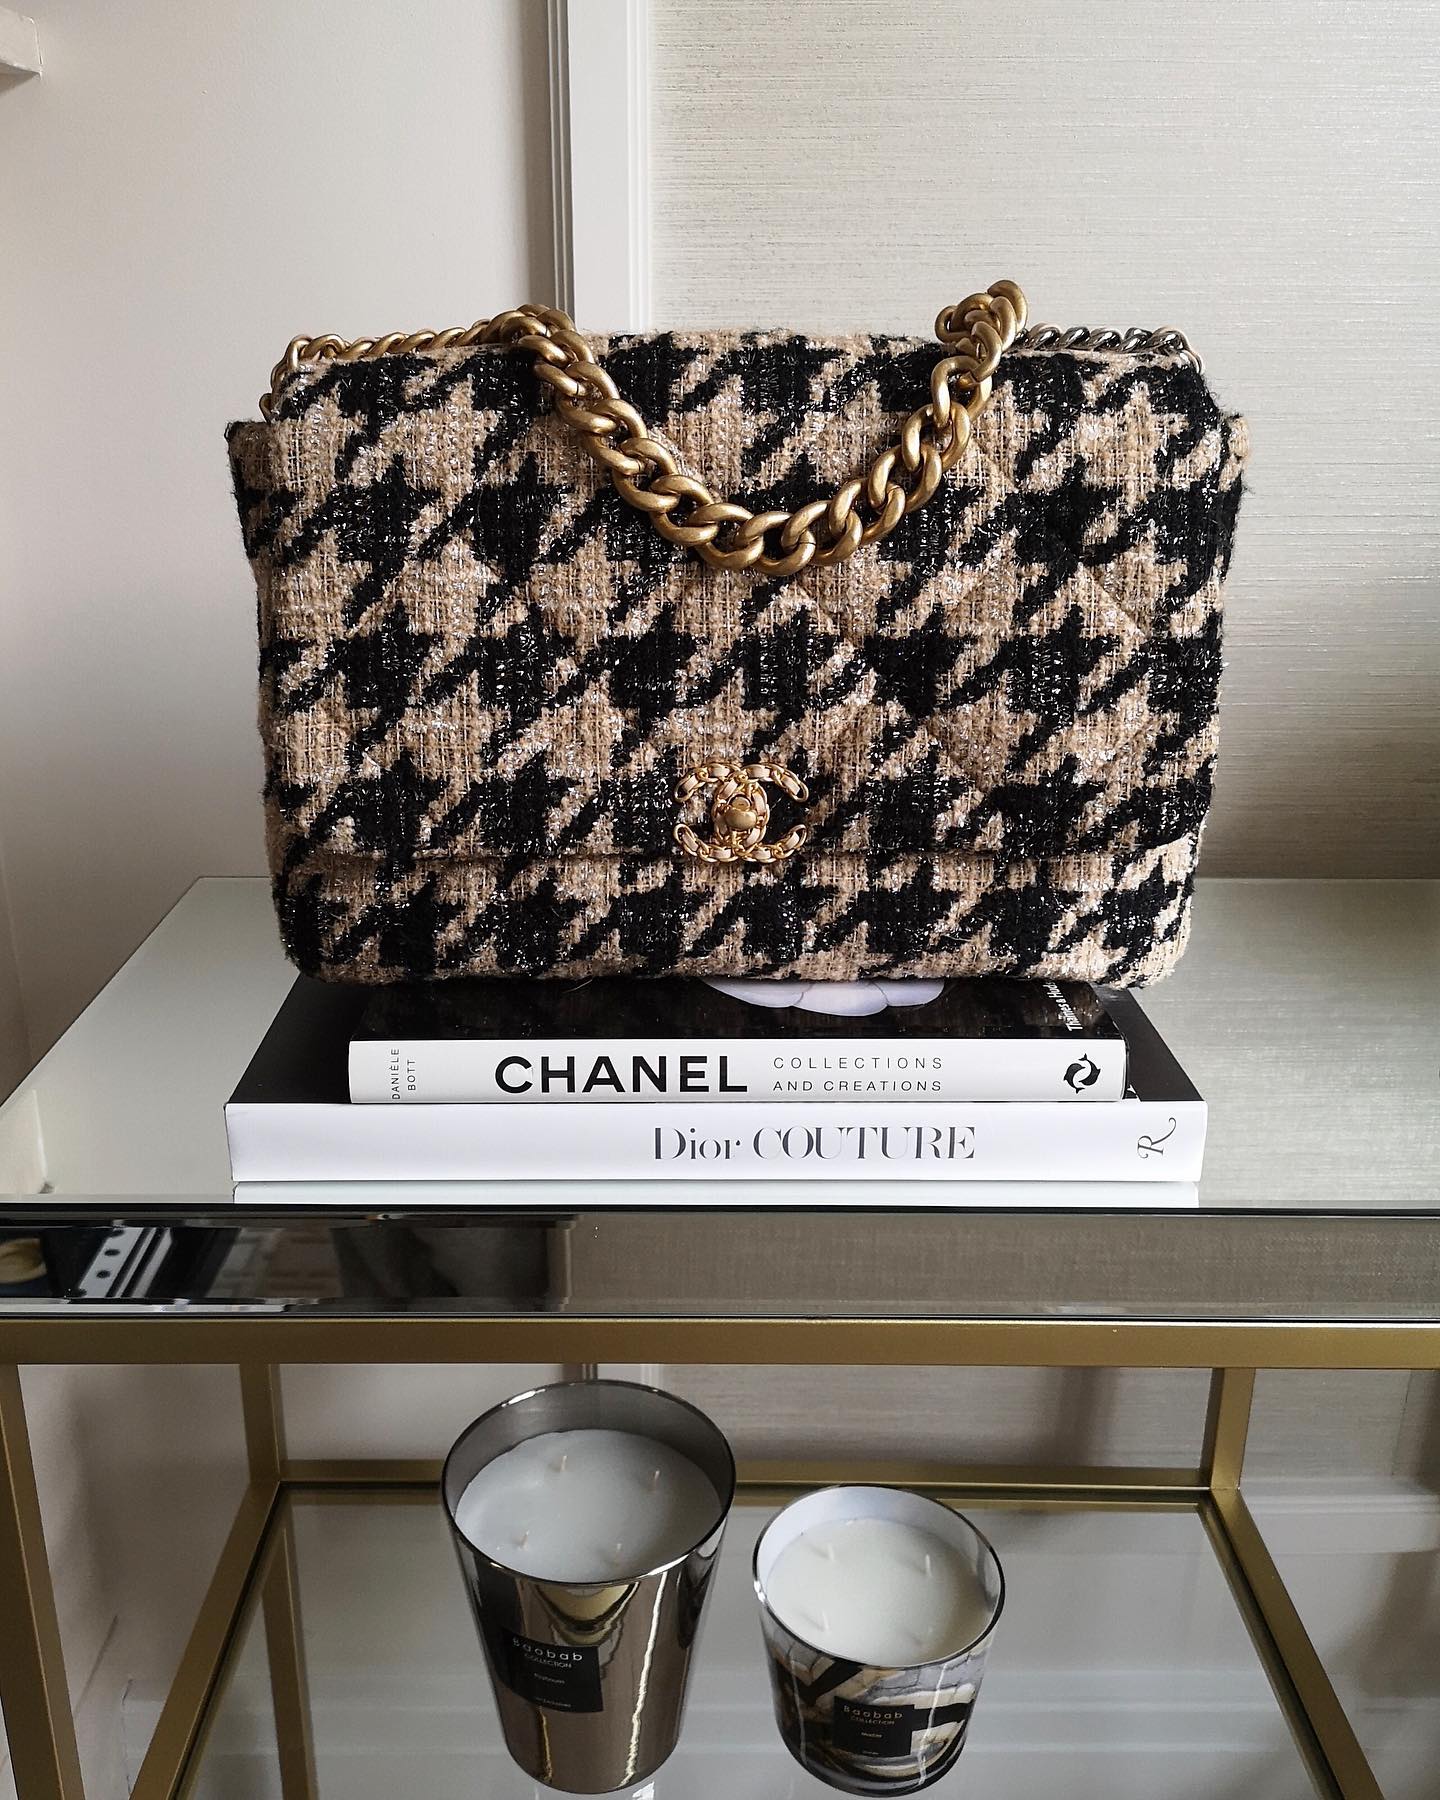 FWRD Renew Chanel Shearling Bag in Black